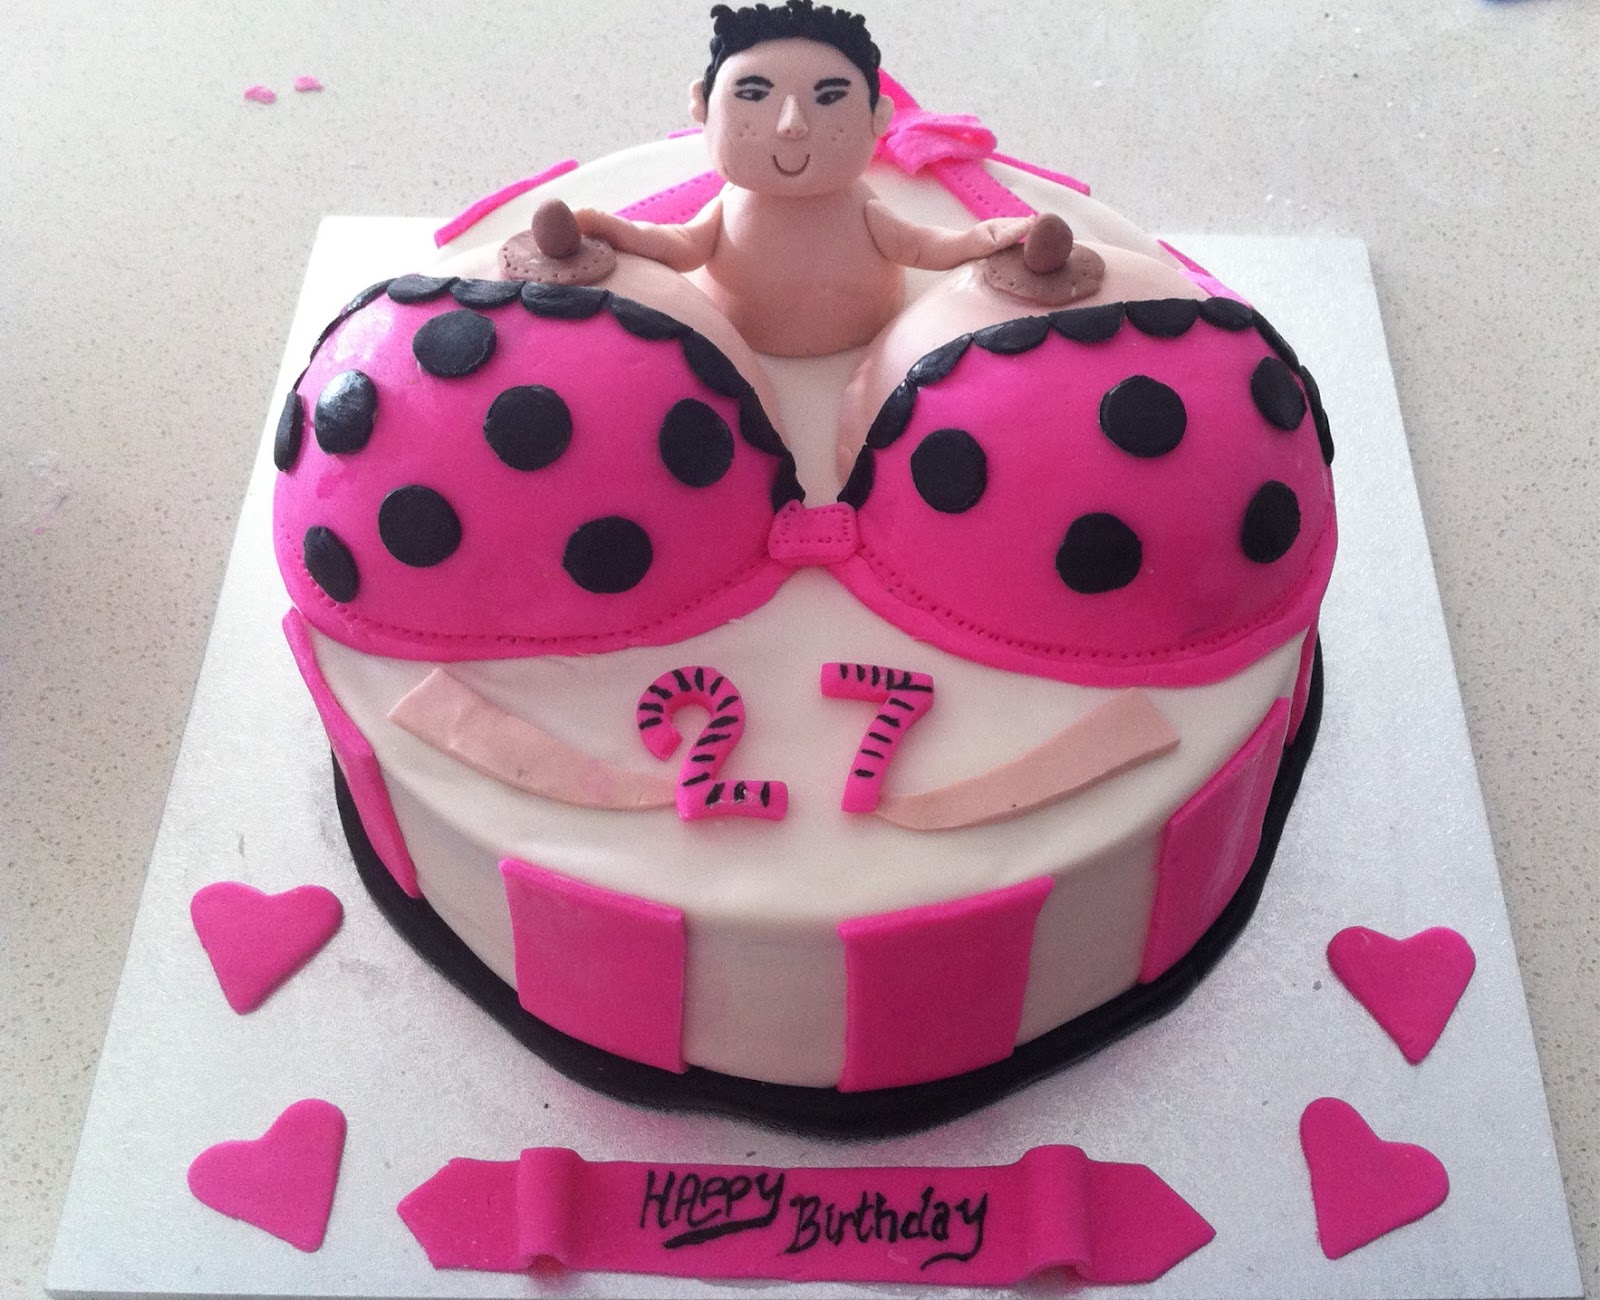 Square Naked Birthday Cakes For Men